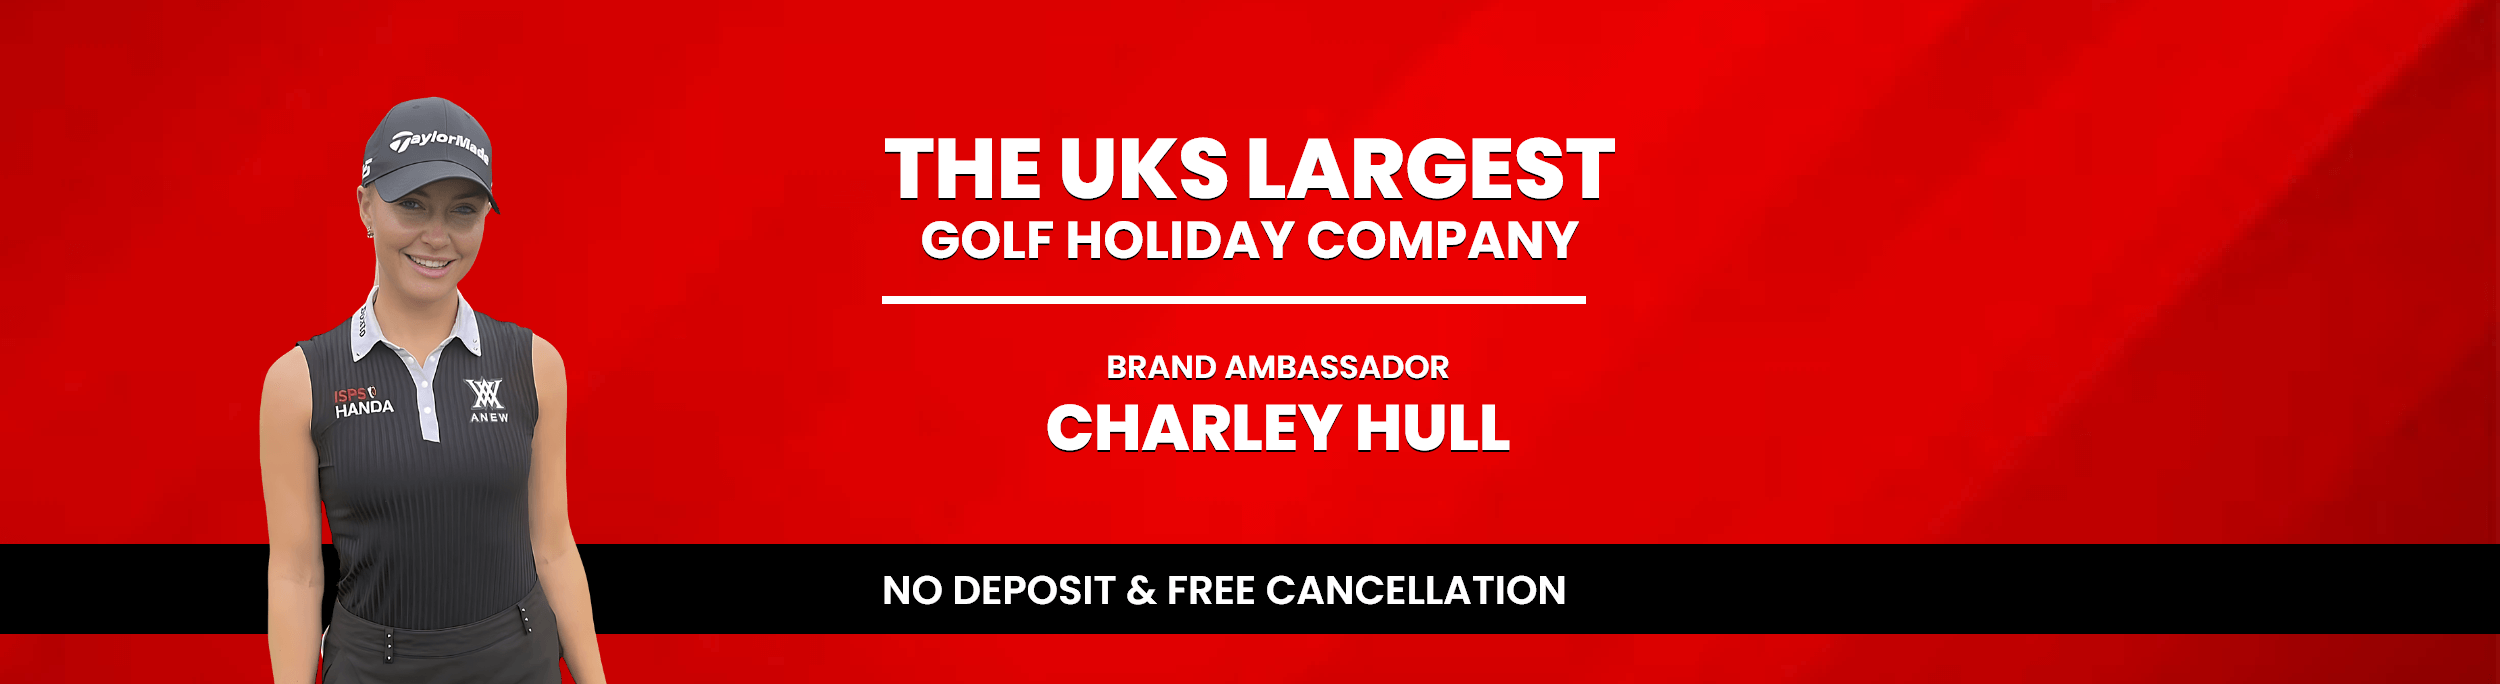 Charley Hull - Golf Holidays Direct Ambassador